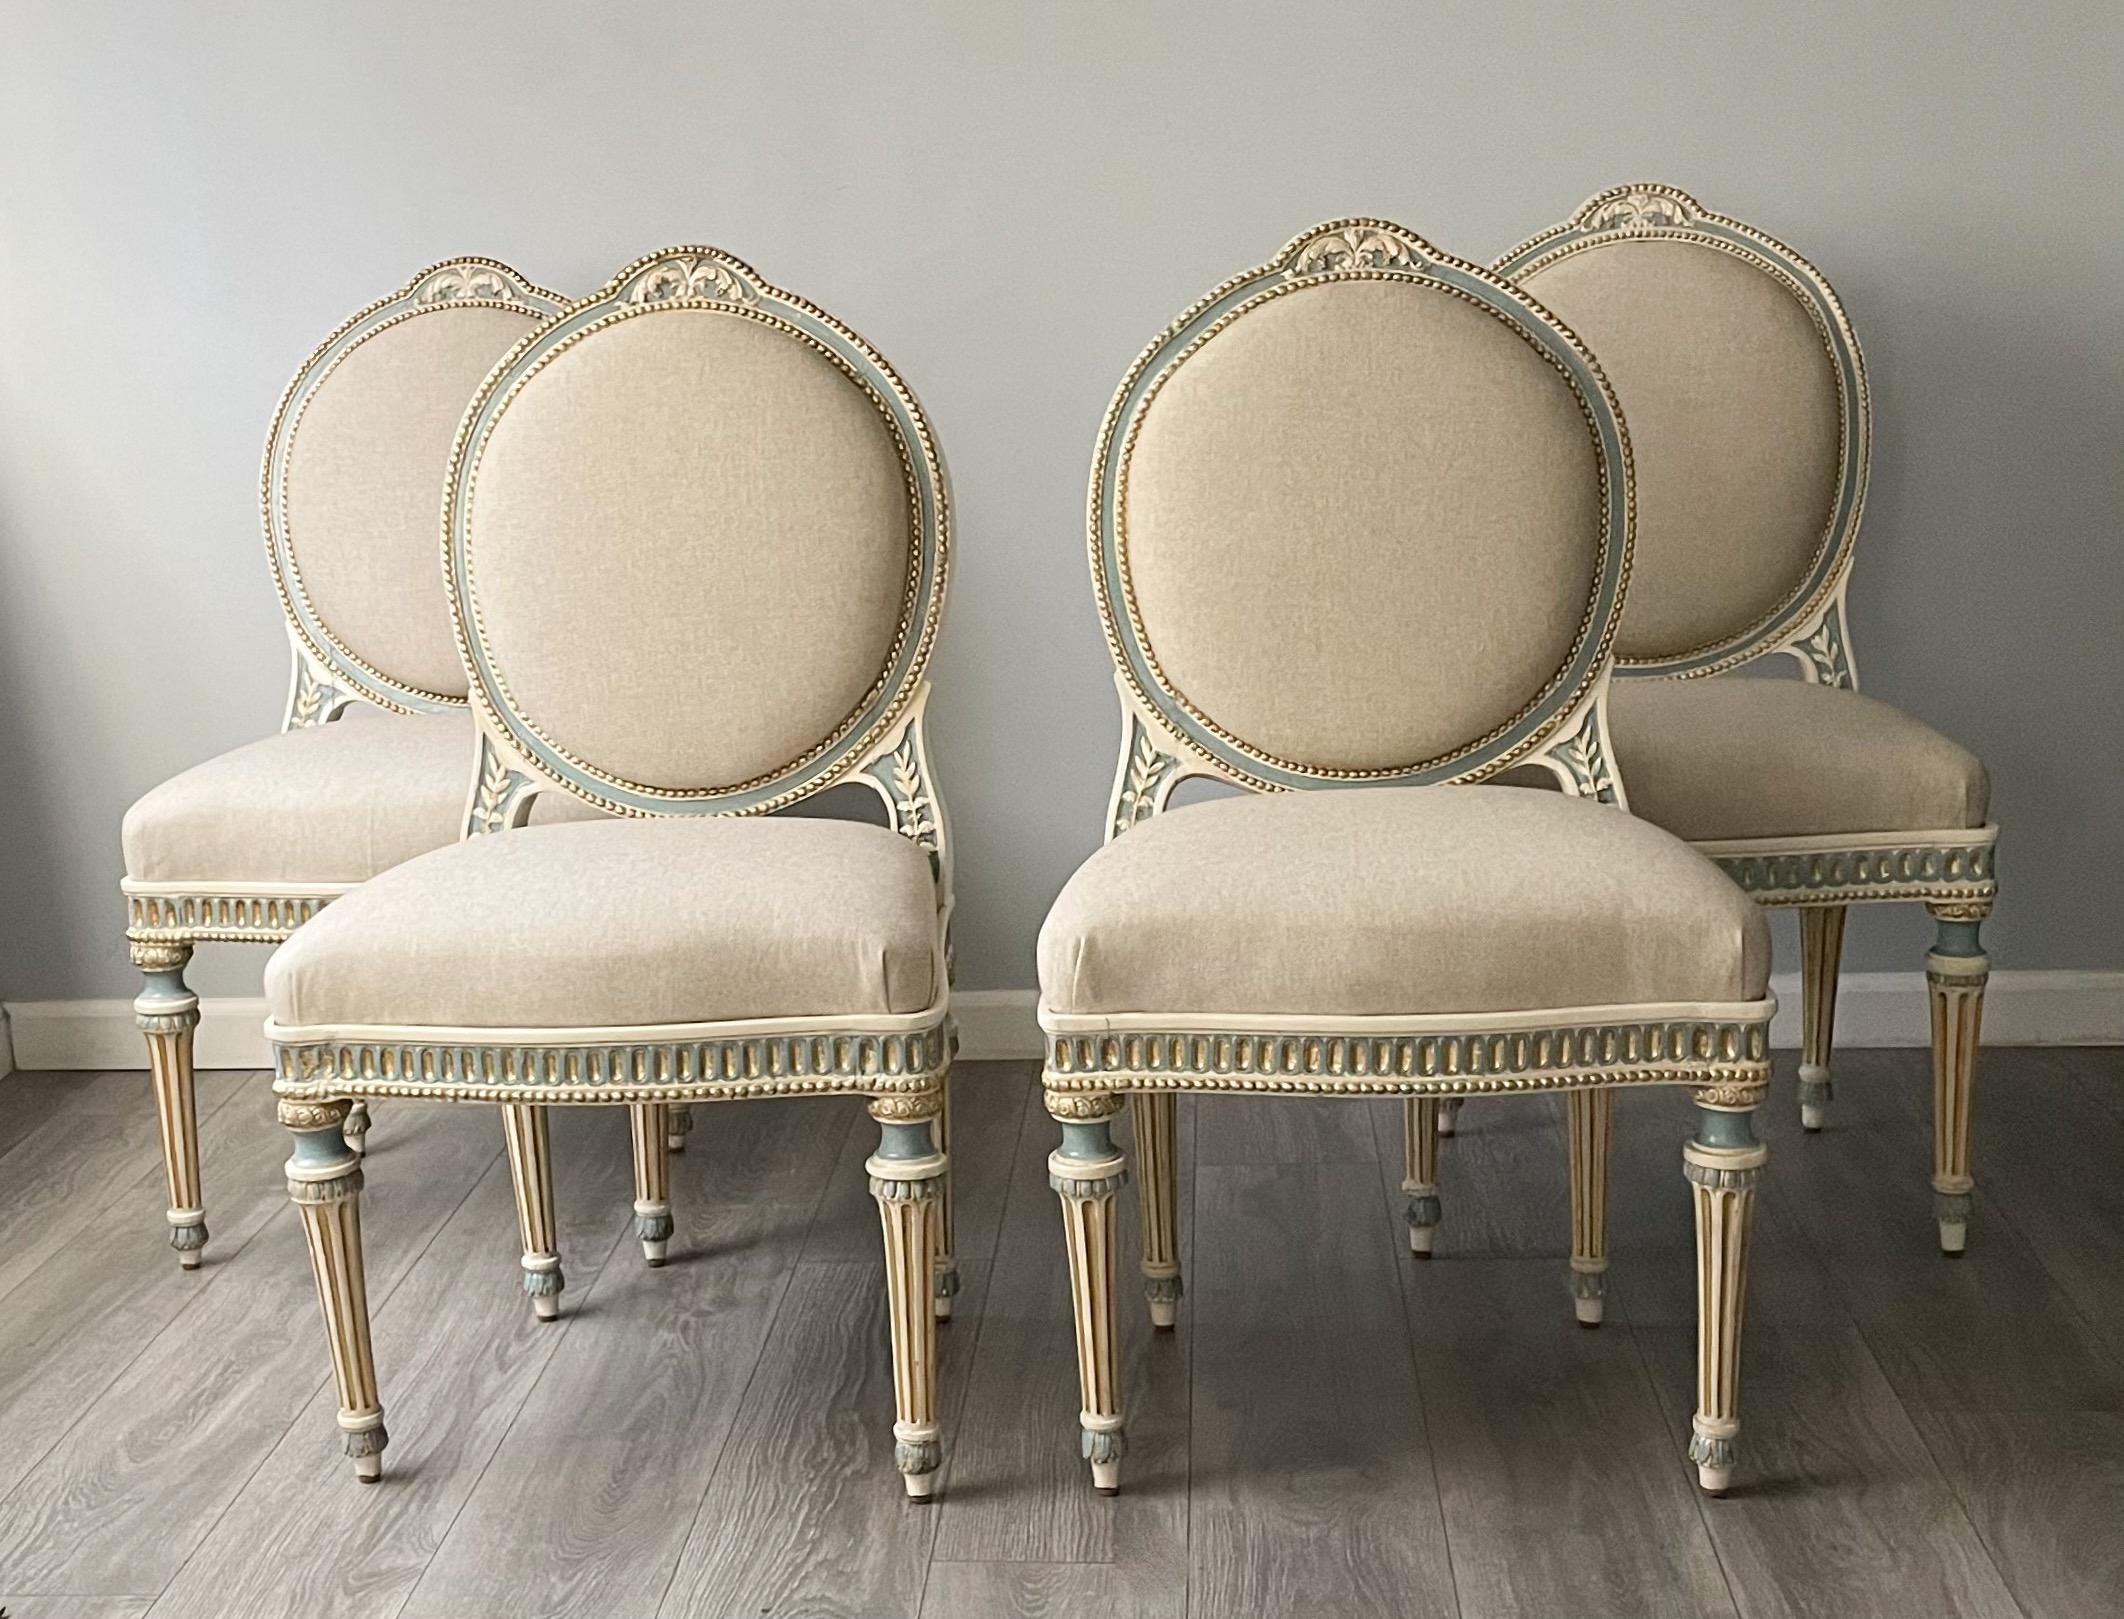 Magnifique ensemble de 4 chaises de salle à manger/chaises d'appoint de style Louis XVI, peintes et dorées à la feuille.

Les chaises présentent des décorations détaillées, sculptées et peintes, et sont recouvertes d'un nouveau tissu en lin.